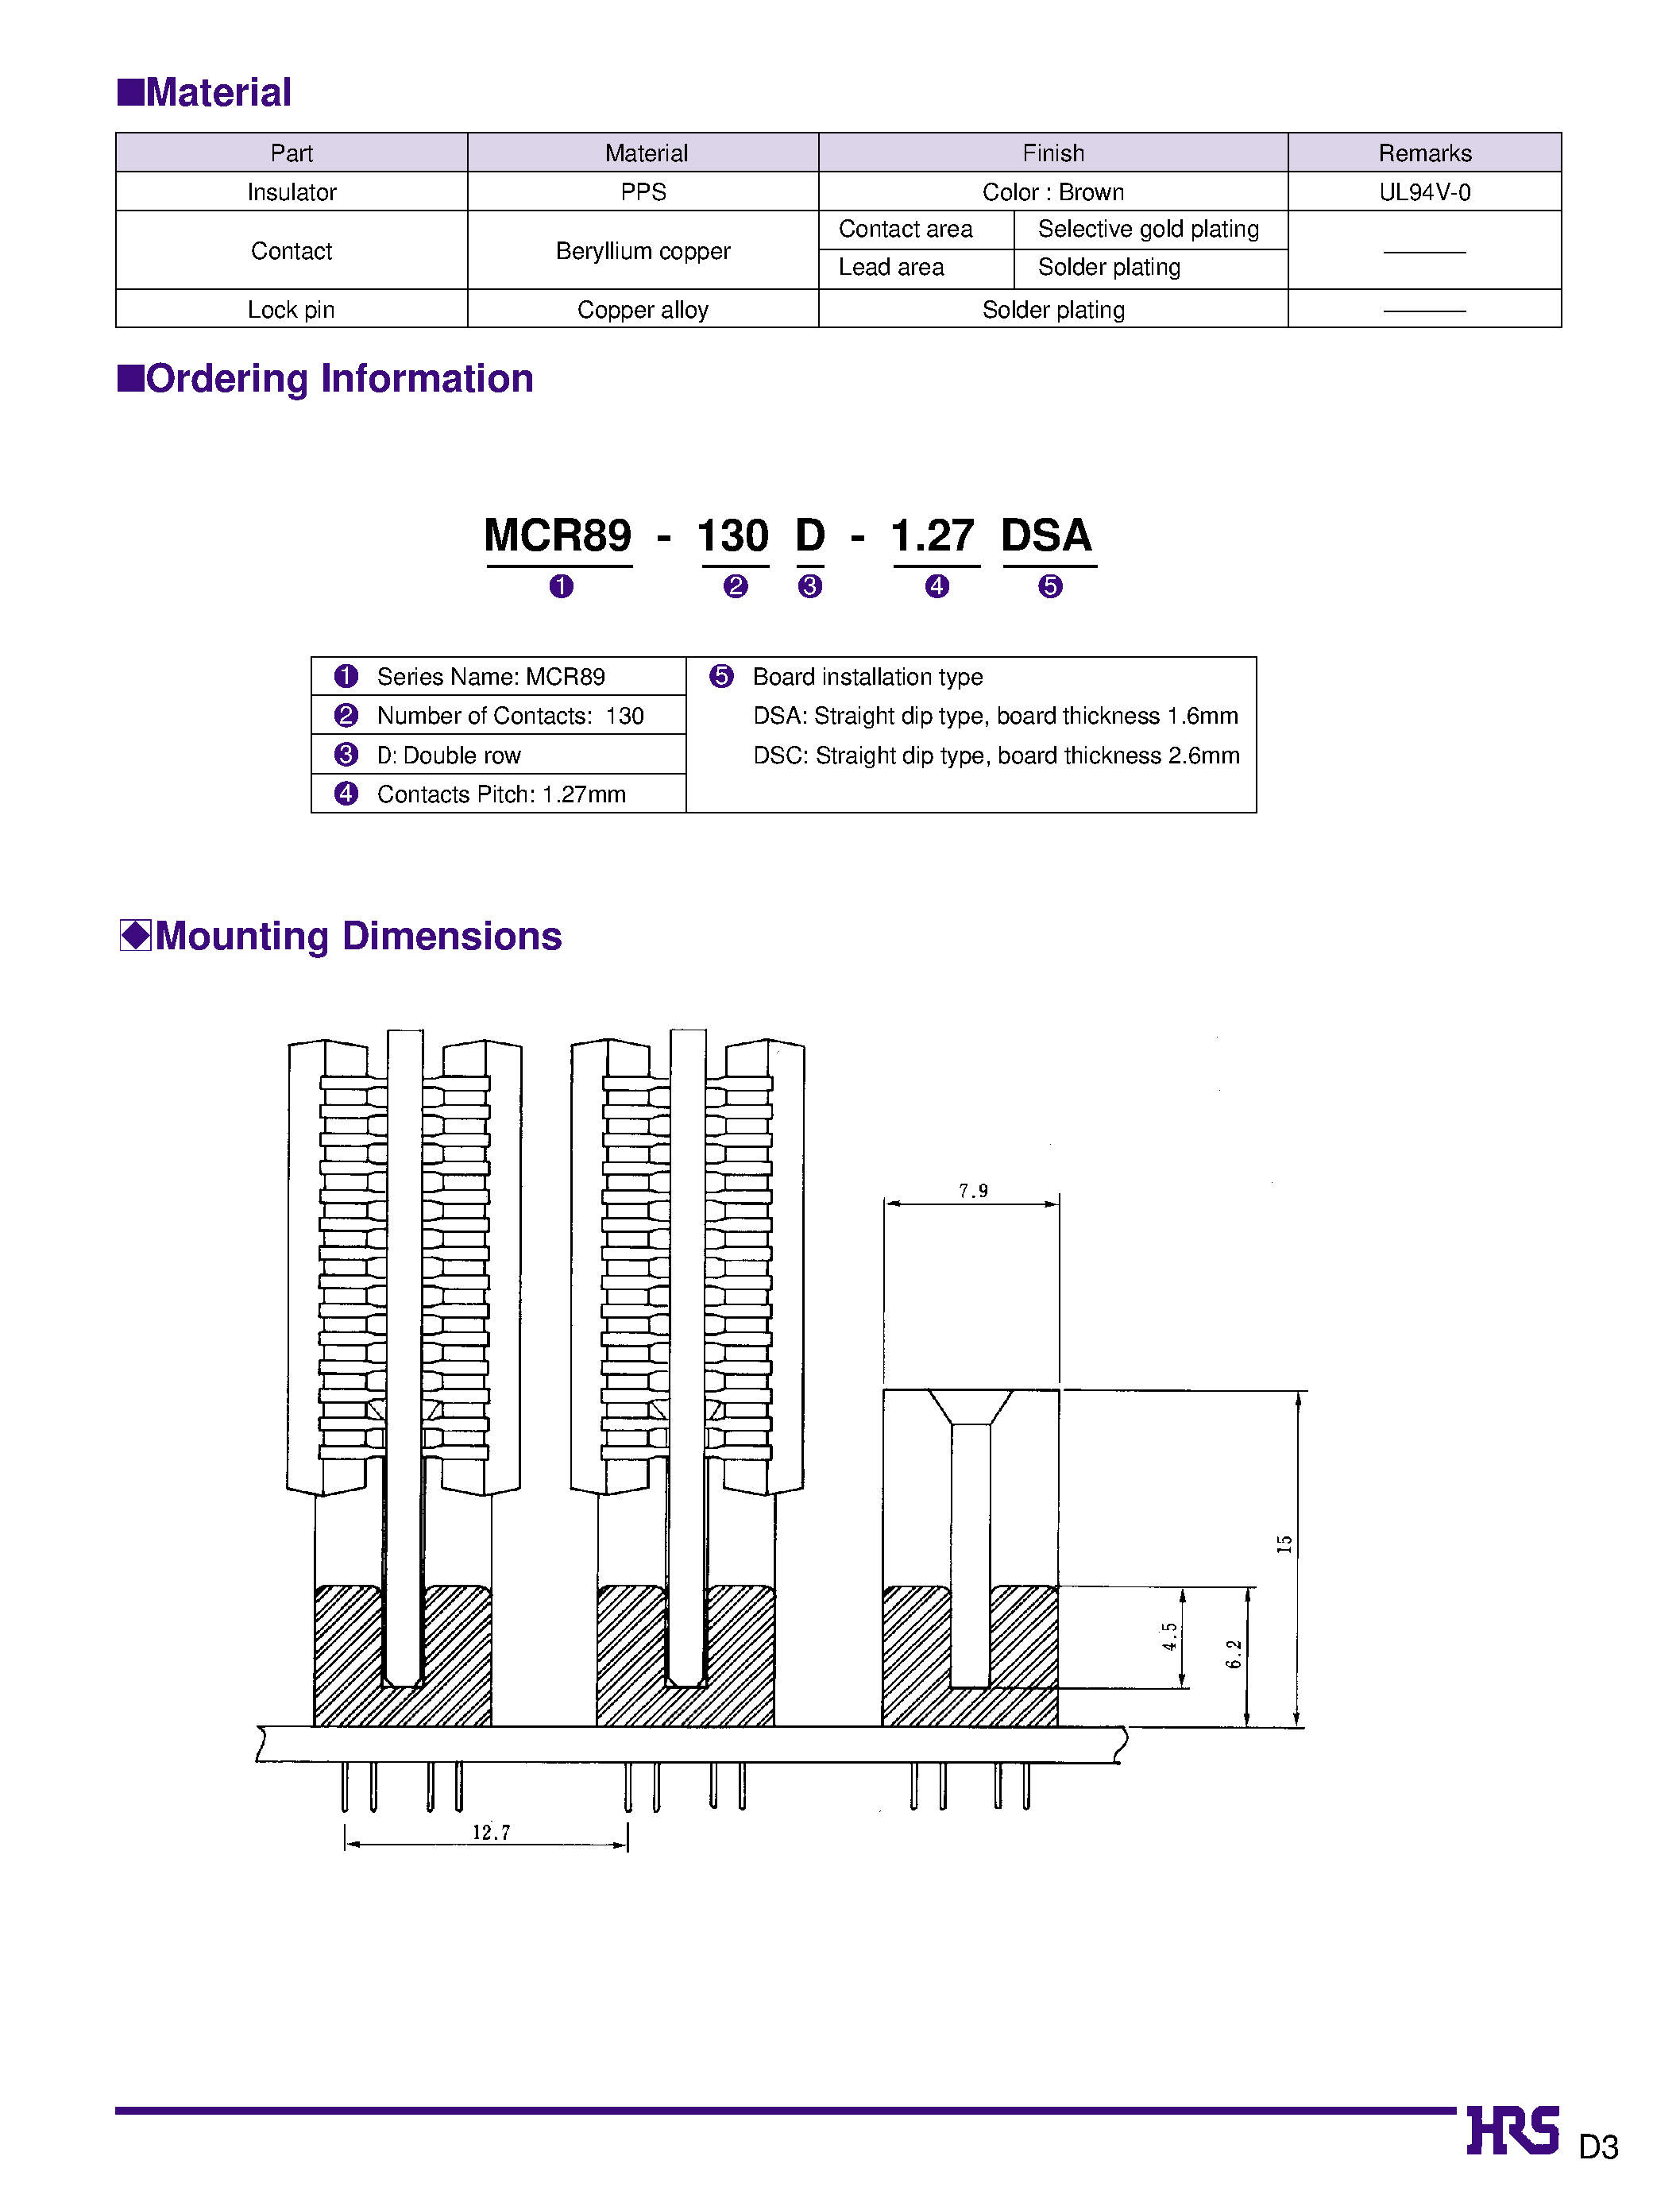 Datasheet MCR89-130D-EJ - Socket for Memory Module Board page 2